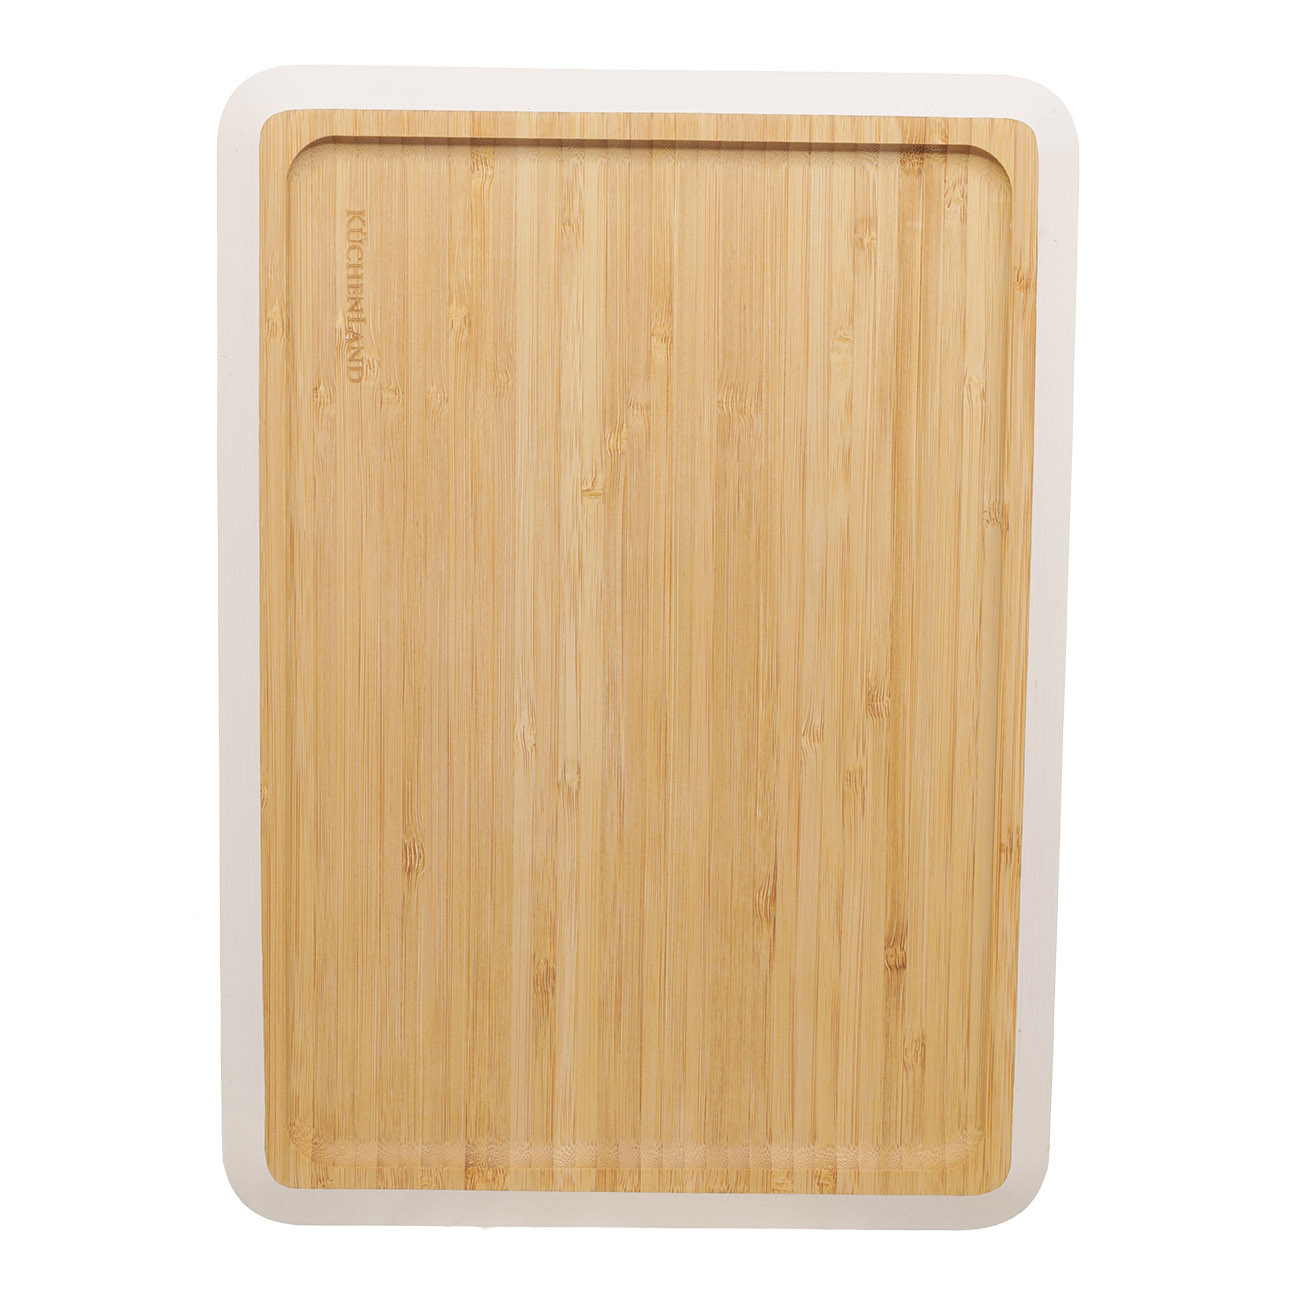 Блюдо, 33x24 см, бамбук, прямоугольное, молочный кант, Bamboo soft изображение № 3